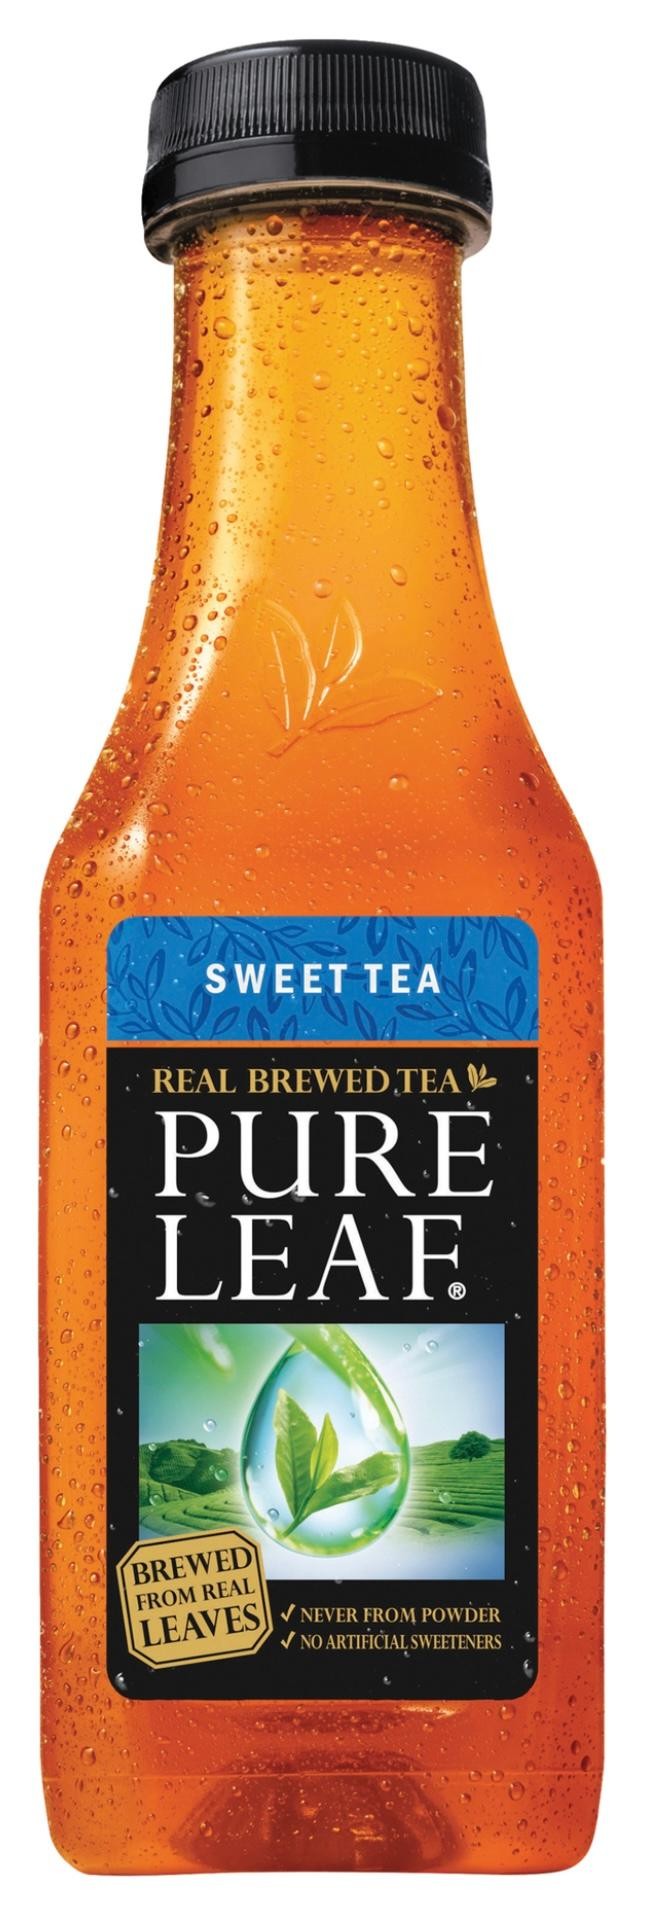 PURE LEAF SWEET TEA